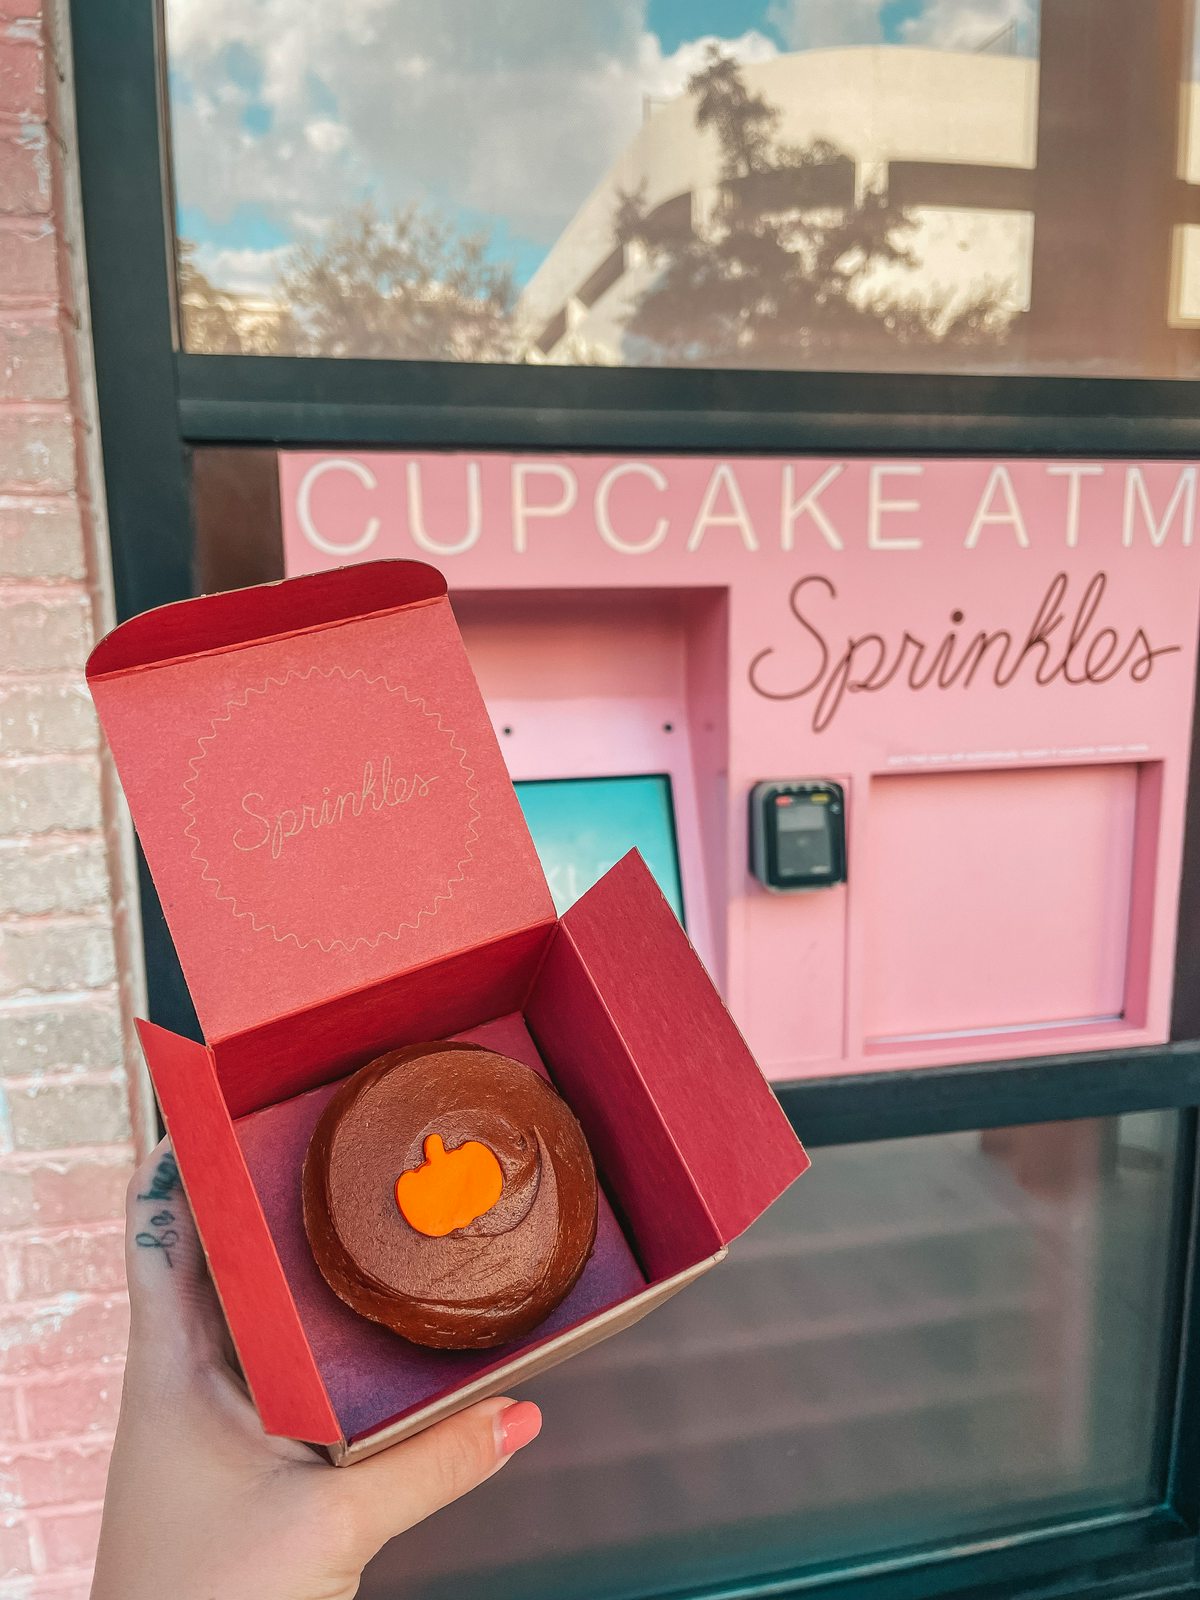 Sprinkles Cupcake ATM in Hyde Park Tampa